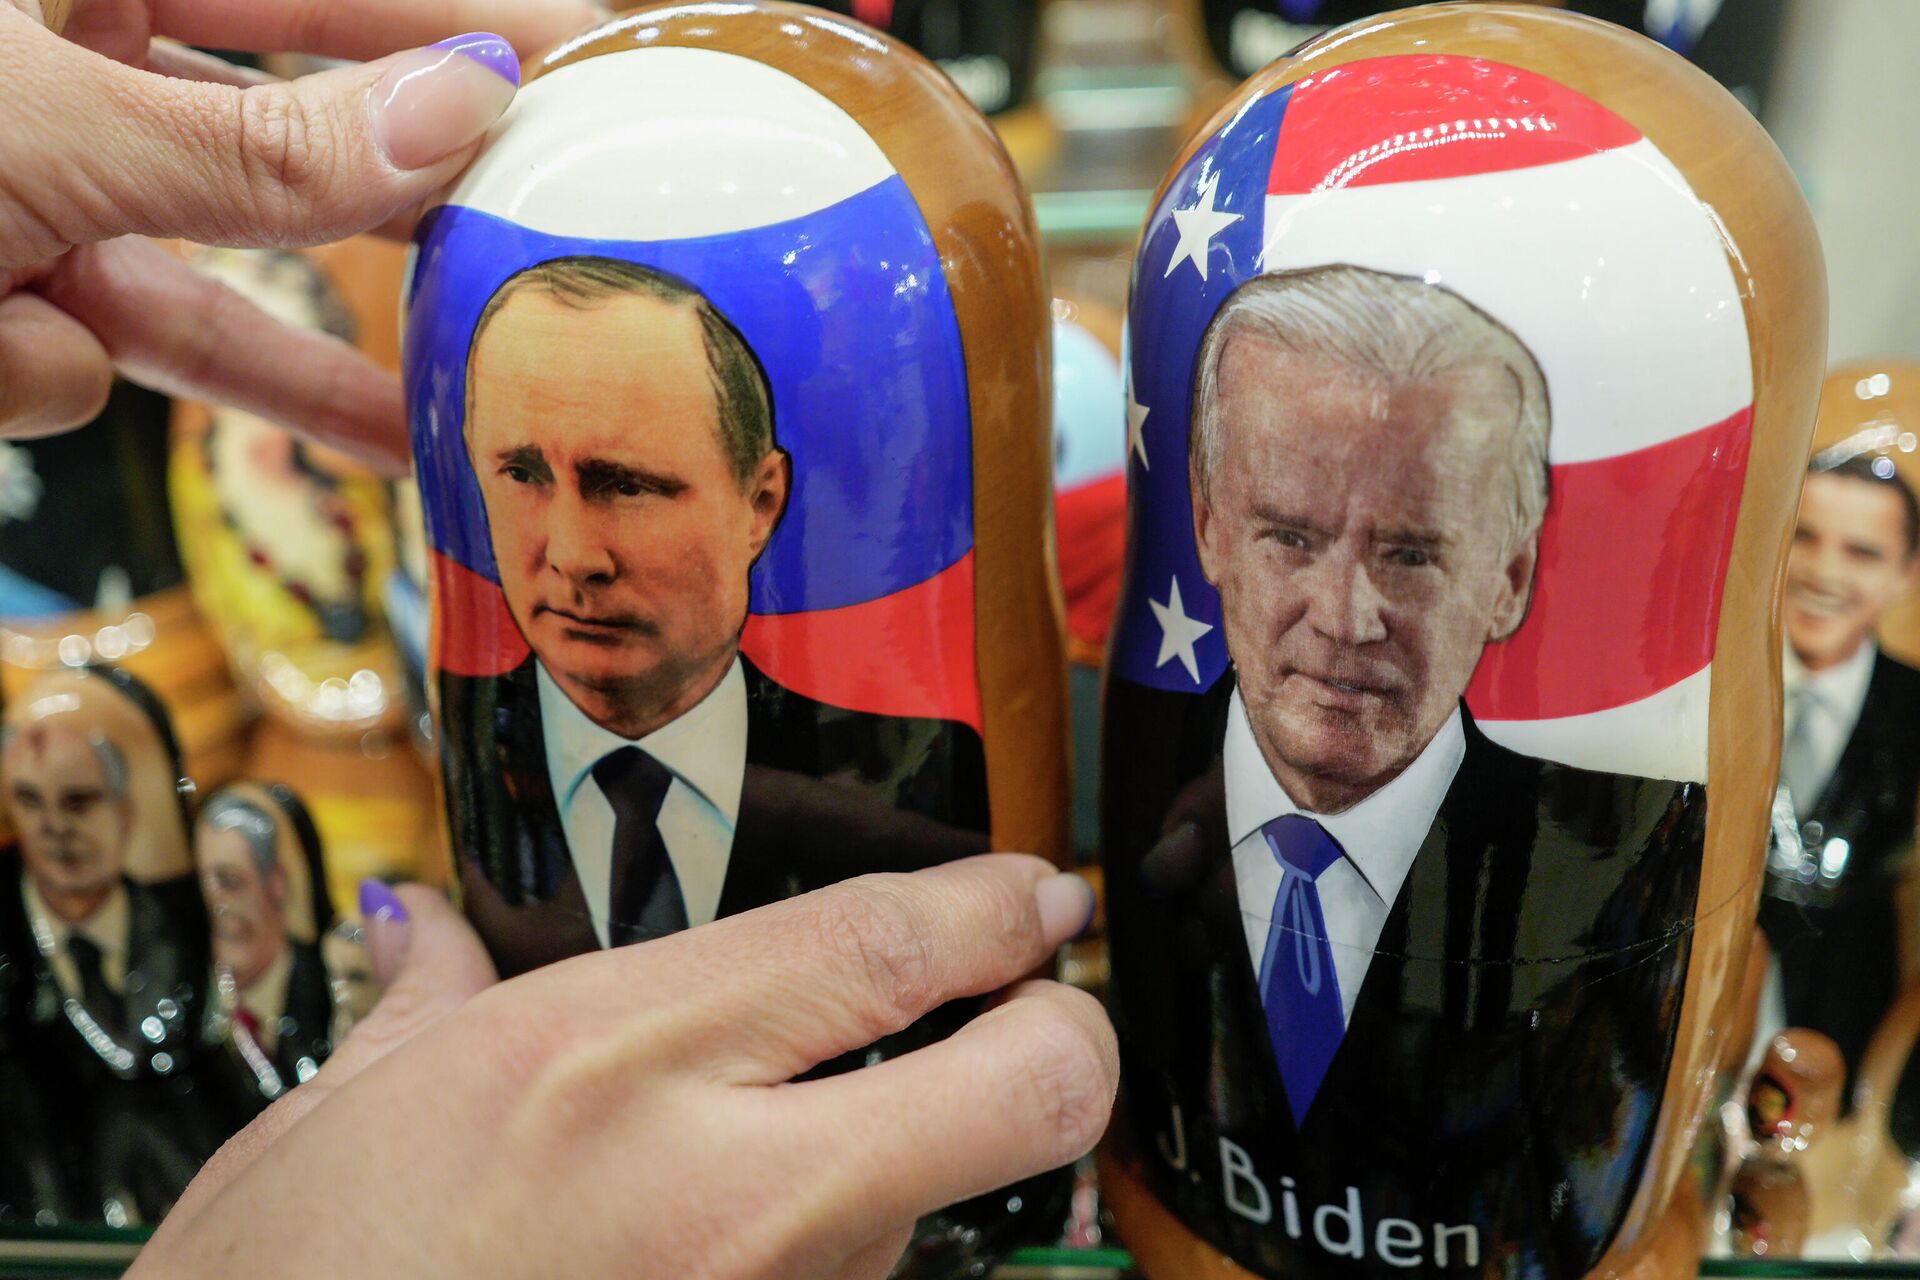 Tradicionais bonecas russas matrioskas com retratos do presidente russo Vladimir Putin e do presidente americano Joe Biden em uma loja em Moscou, 6 de dezembro de 2021 - Sputnik Brasil, 1920, 23.03.2022